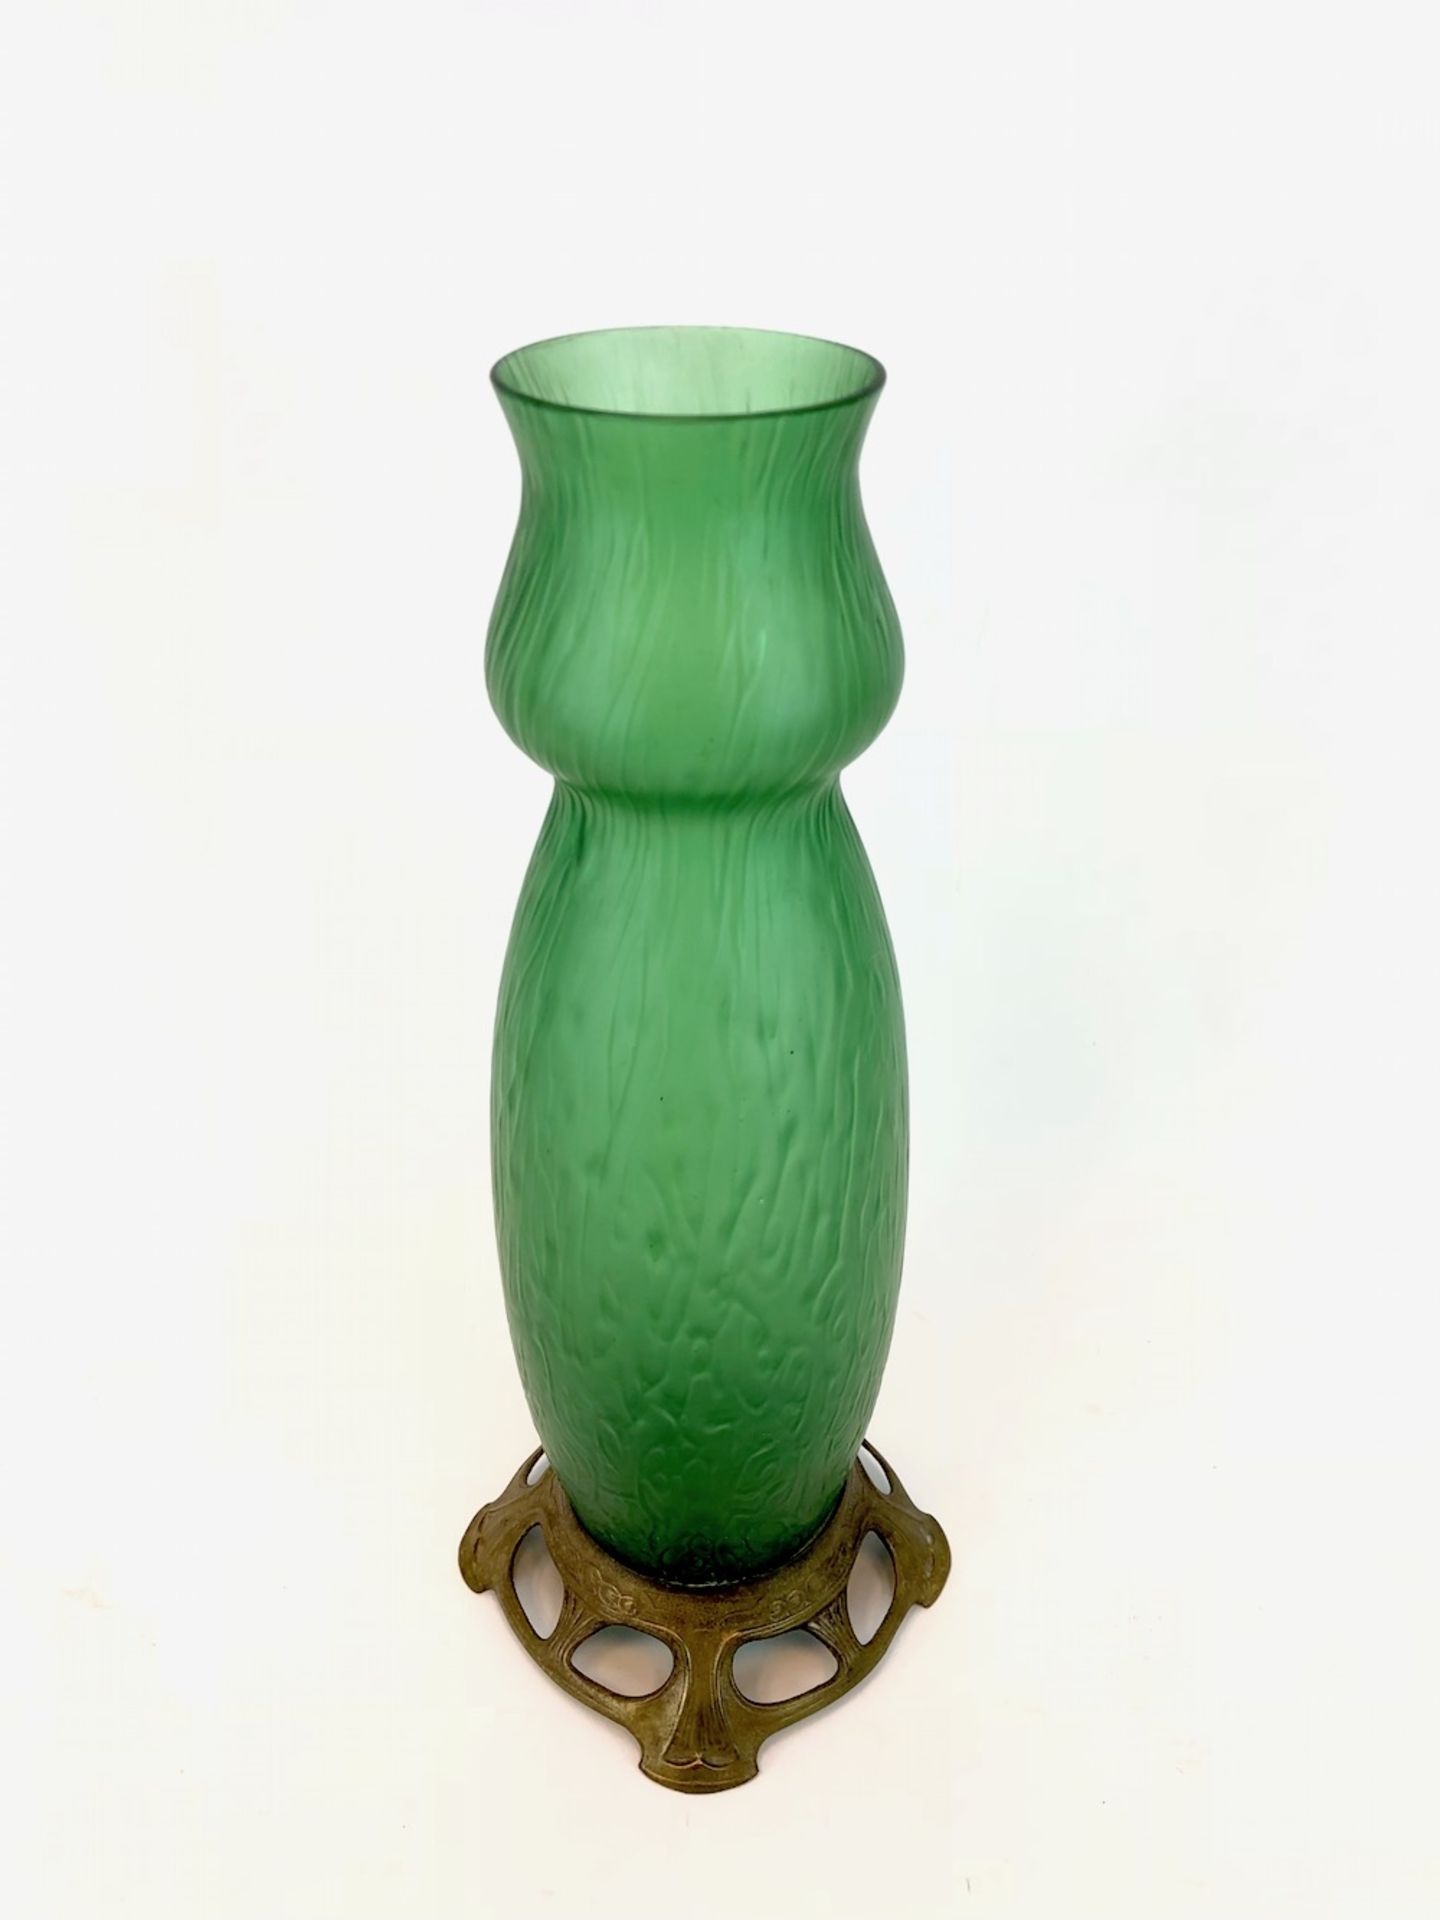 Formschöne Vase: Jugendstil Handarbeit.Grünes Glas aufwendig von Hand gearbeitet, hohe leicht - Image 2 of 3